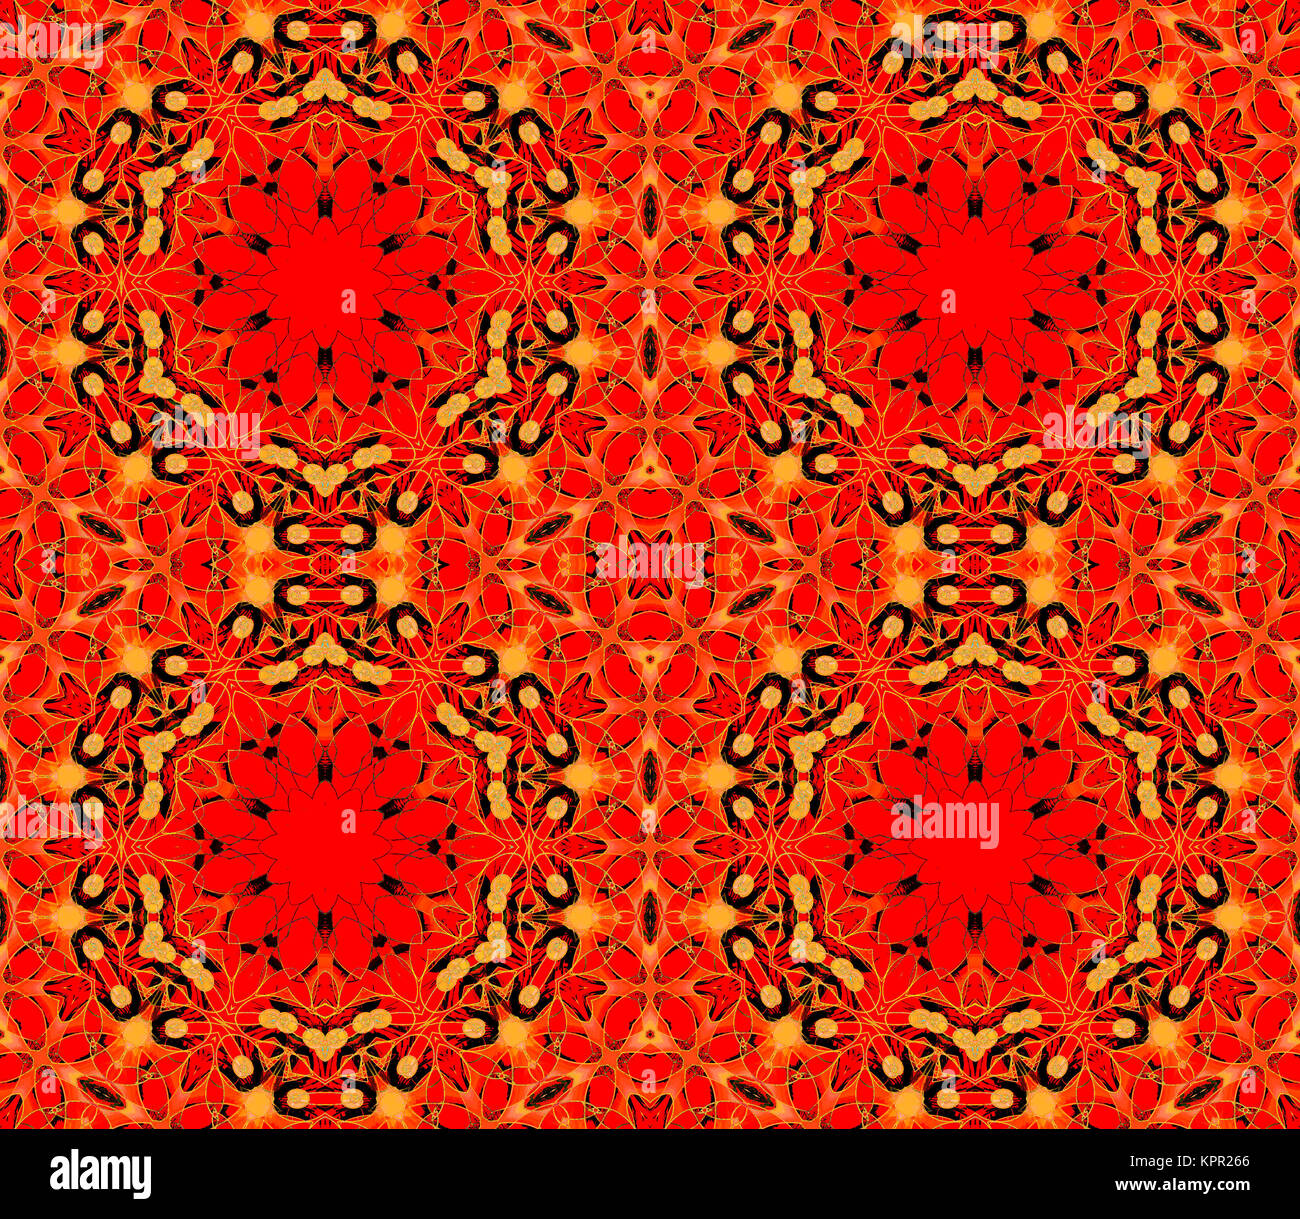 Geométrica abstracta de fondo sin fisuras. Patrón hexagonal rojo ornamentado con elementos en amarillo, naranja y negro, dominante y extensa. Foto de stock